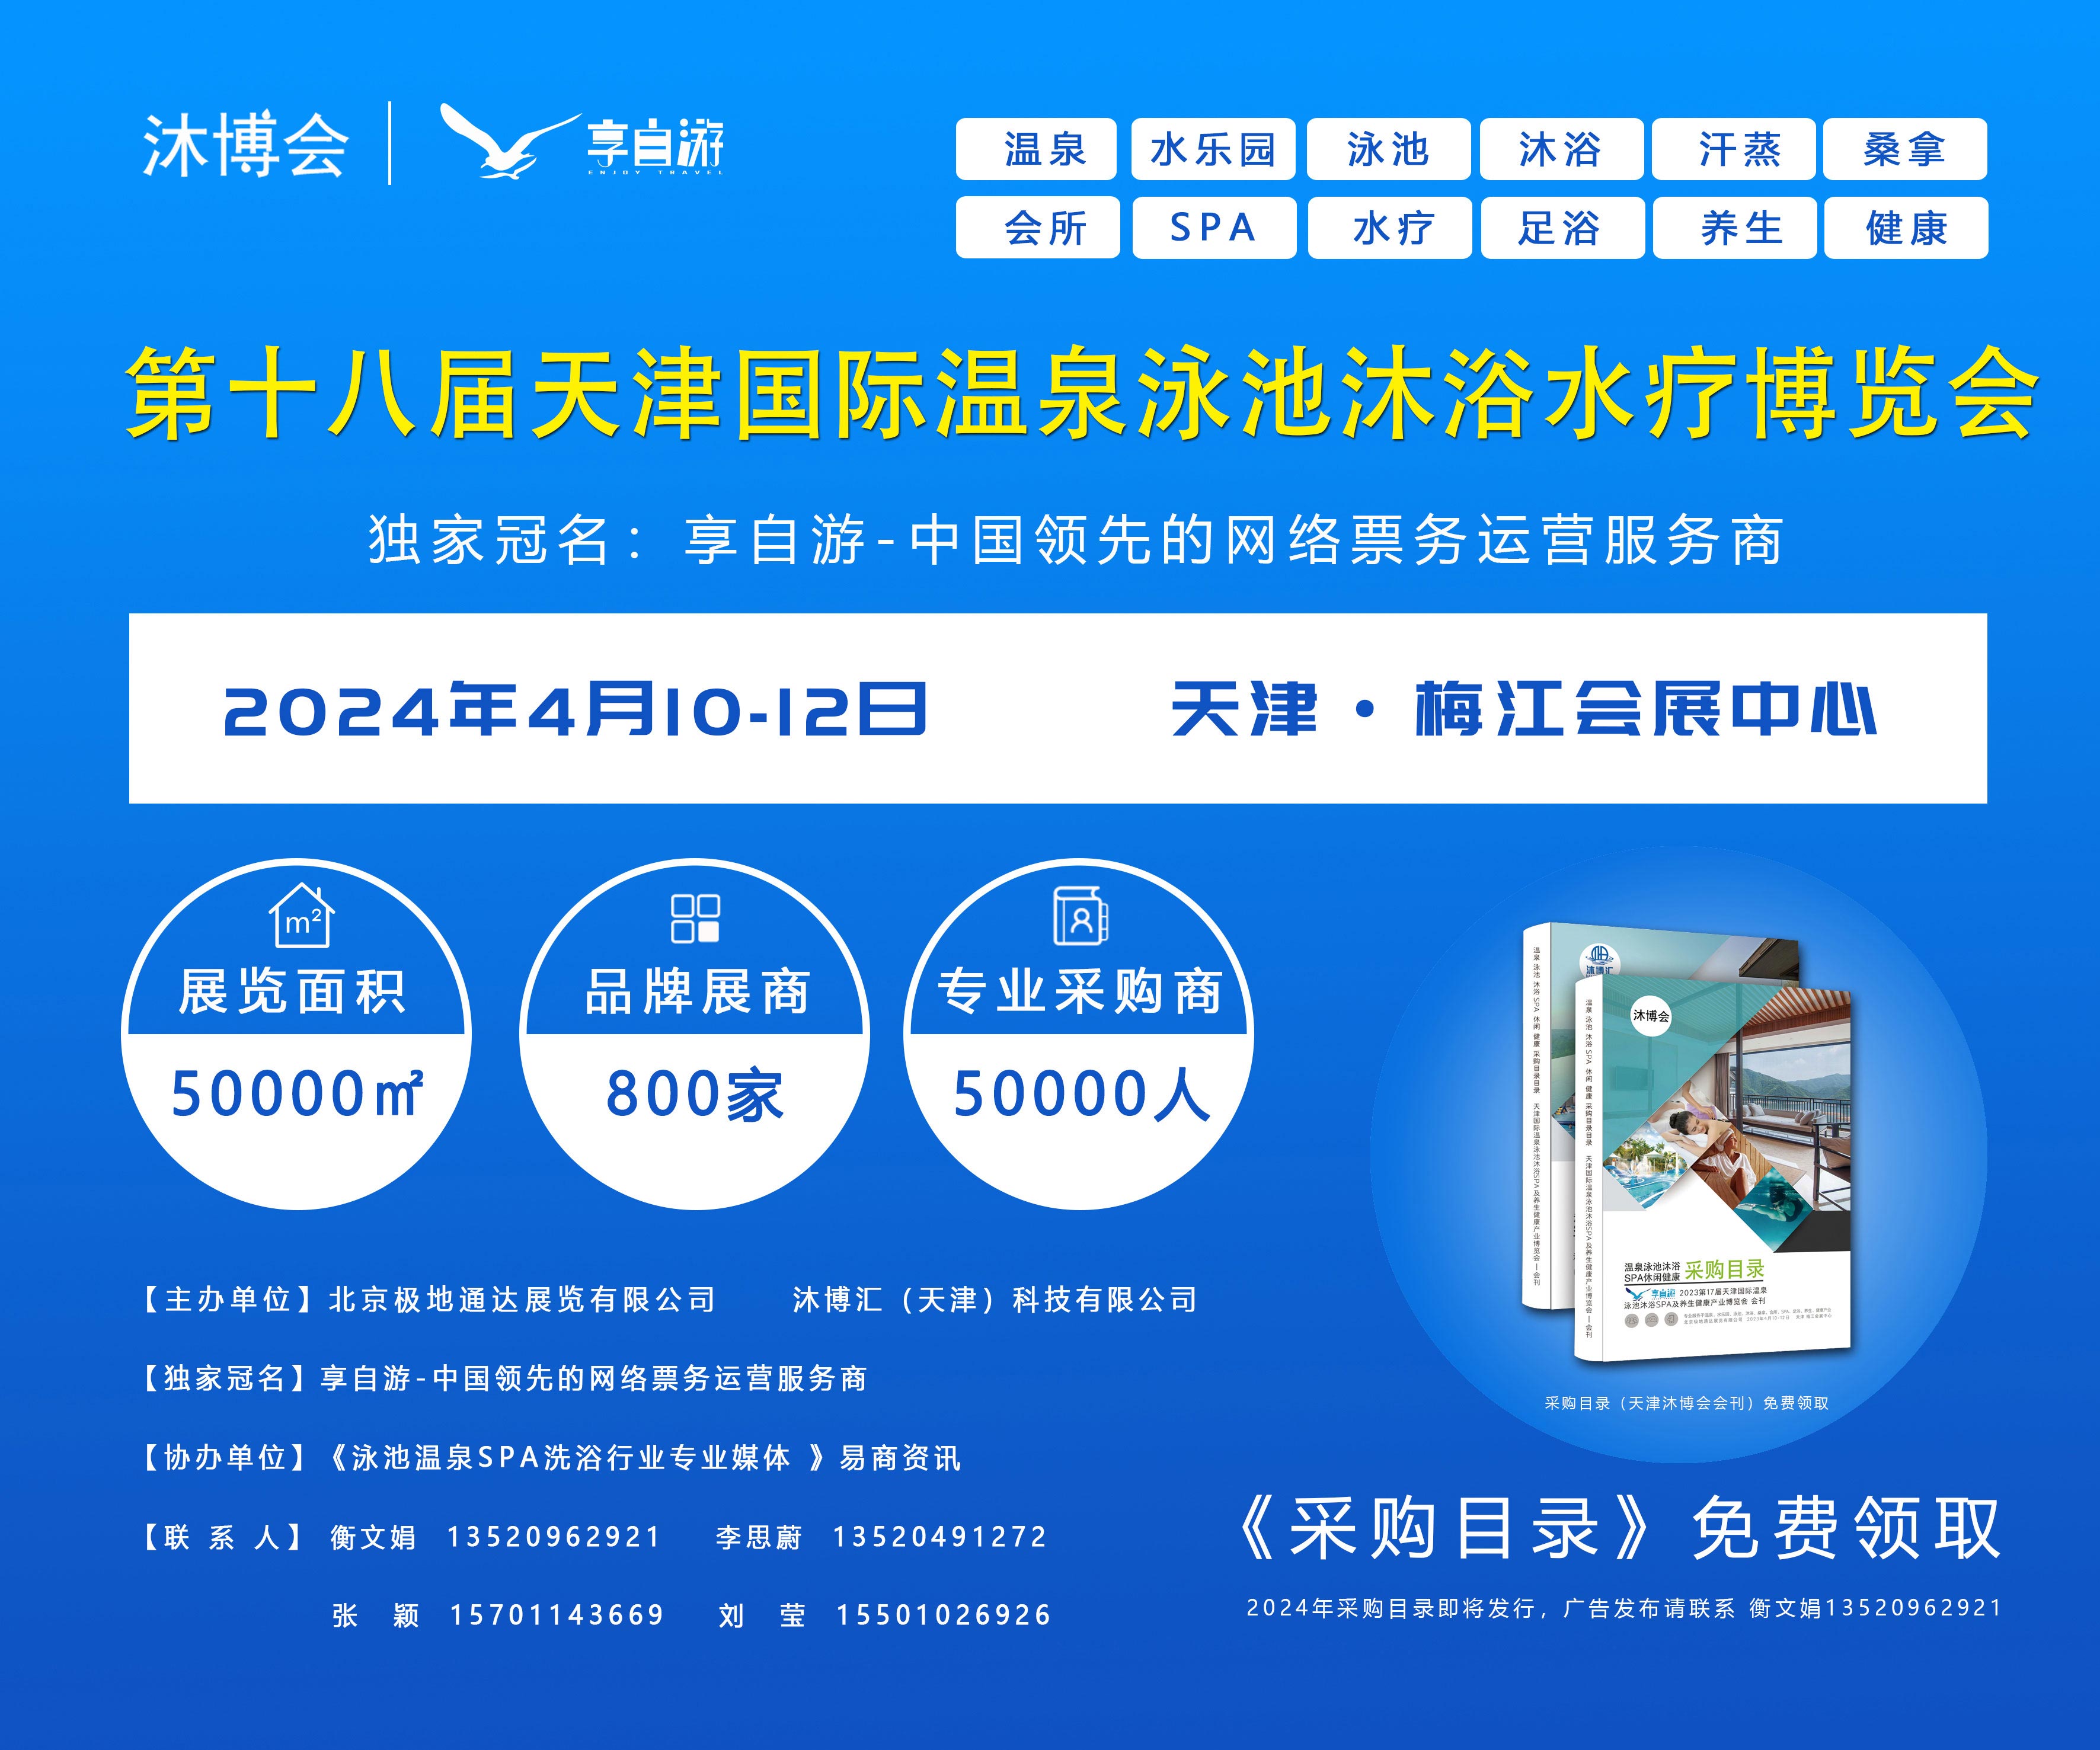 2024 8届天津国际温泉泳池沐浴水疗及养生健康产业博览会  